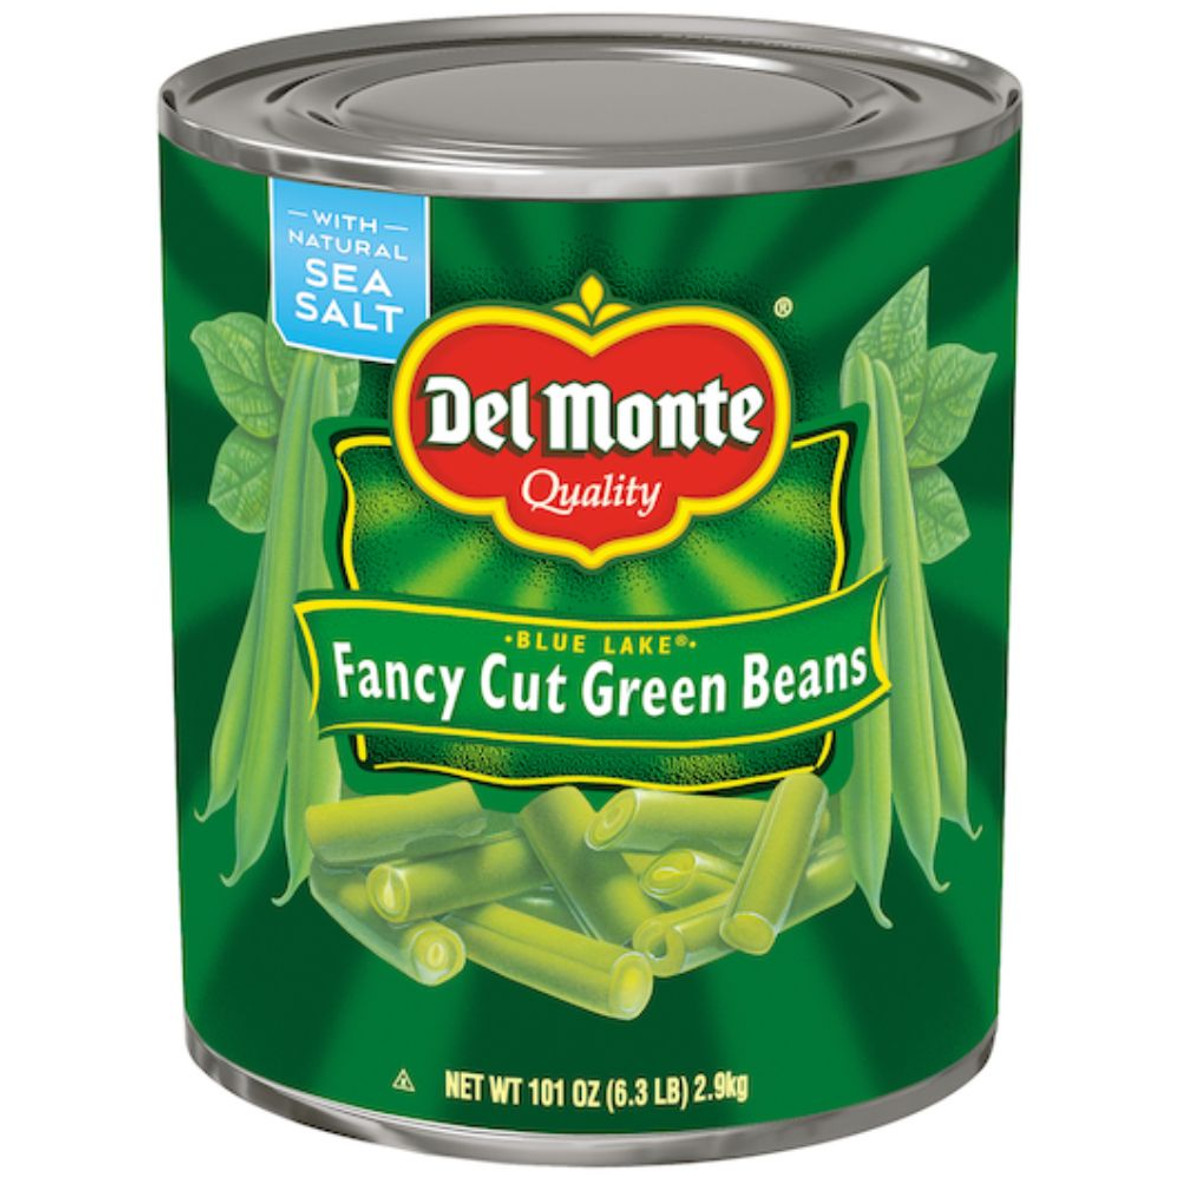 Del Monte Fancy Cut Green Beans